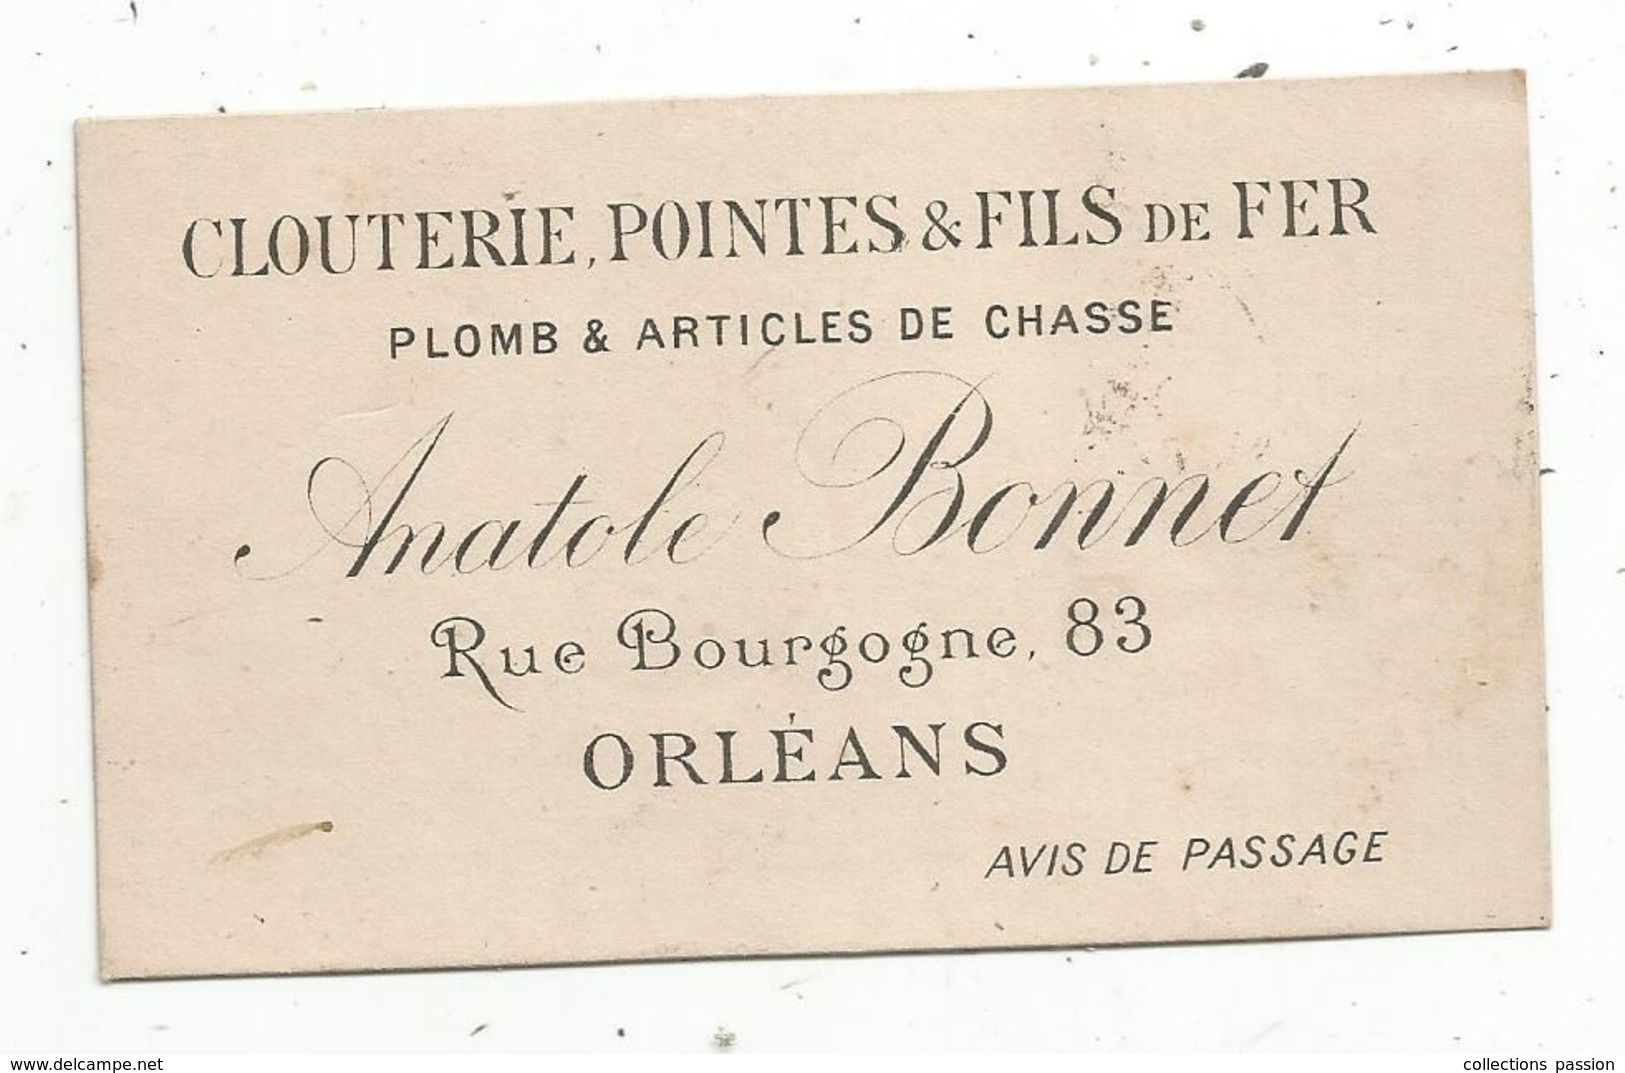 Carte De Visite , Clouterie , Pointes & Fils De Fer ,plomb & Article De Chasse ,A. BONNET , Orléans ,avis De Passage - Visiting Cards